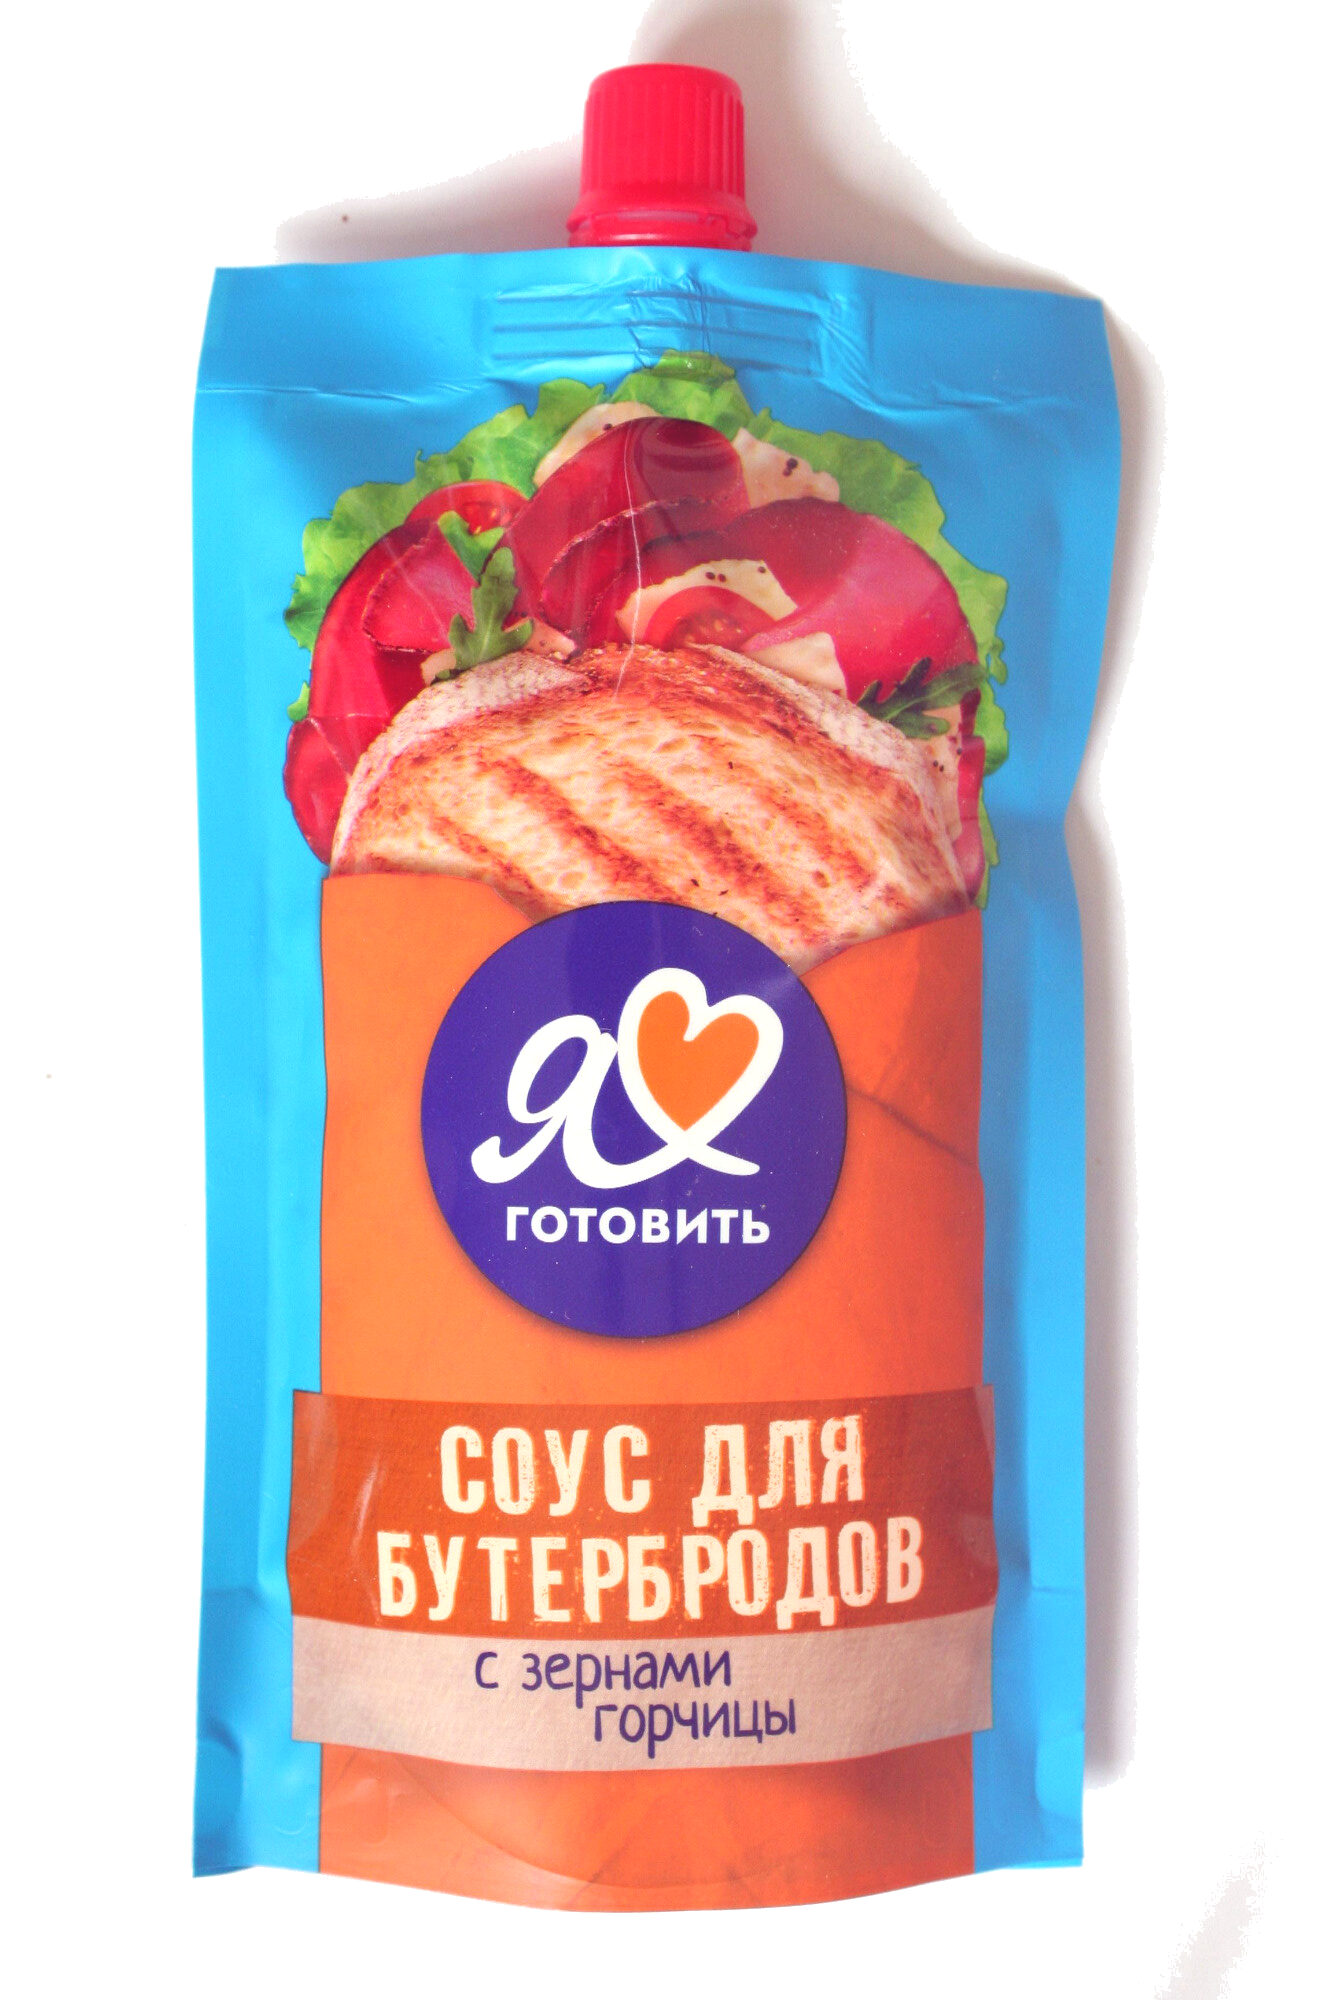 Соус для бутербродов - Product - ru